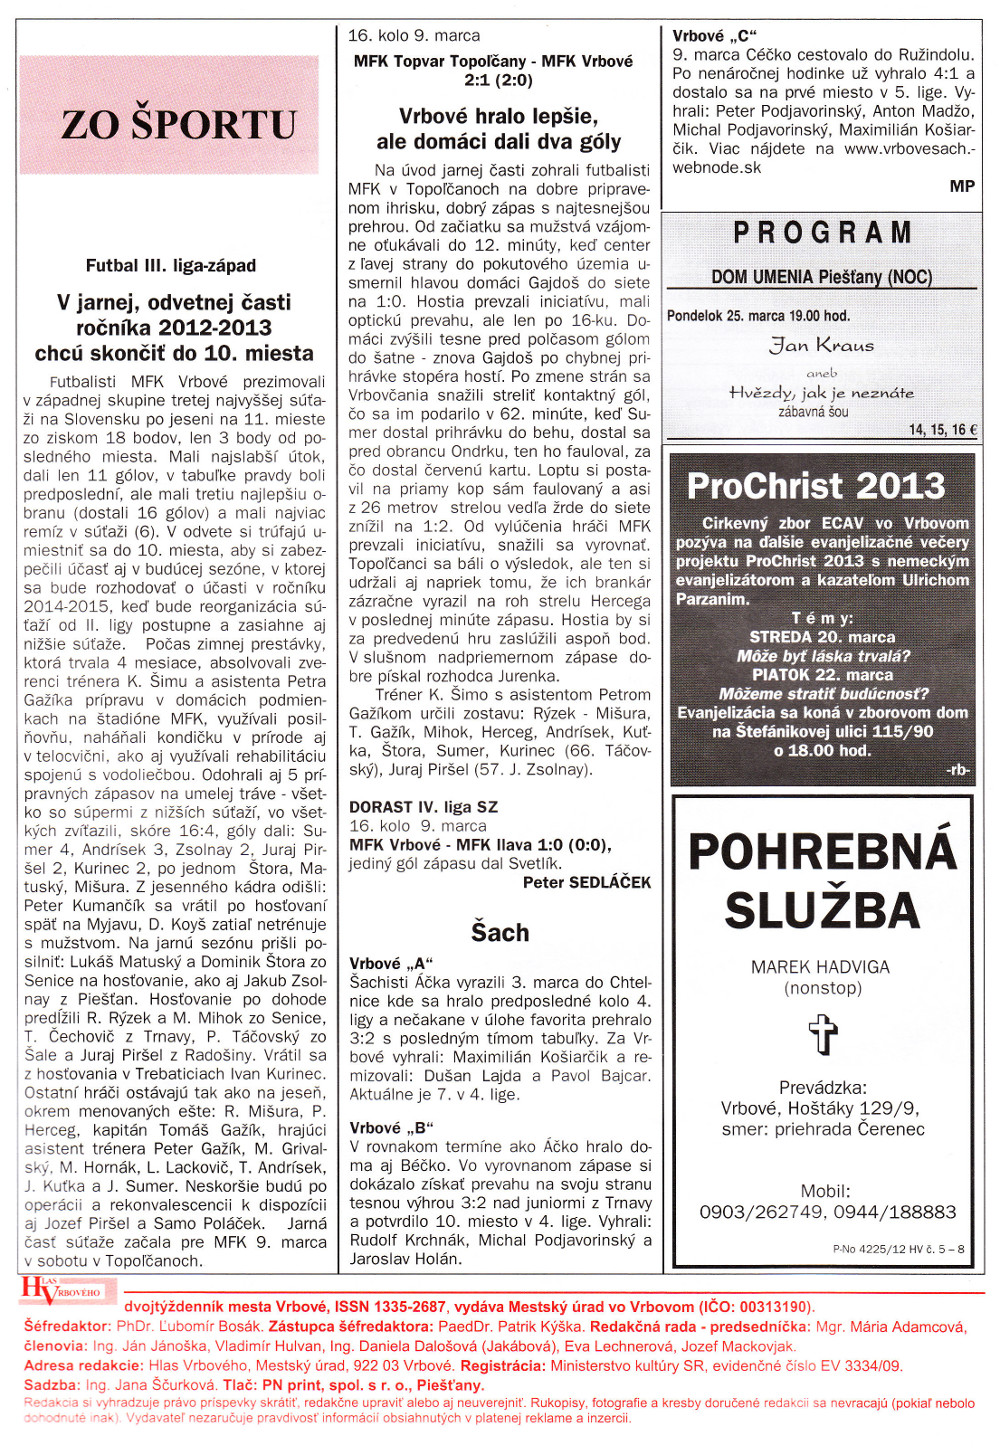 Hlas Vrbového 06/2013, strana 8